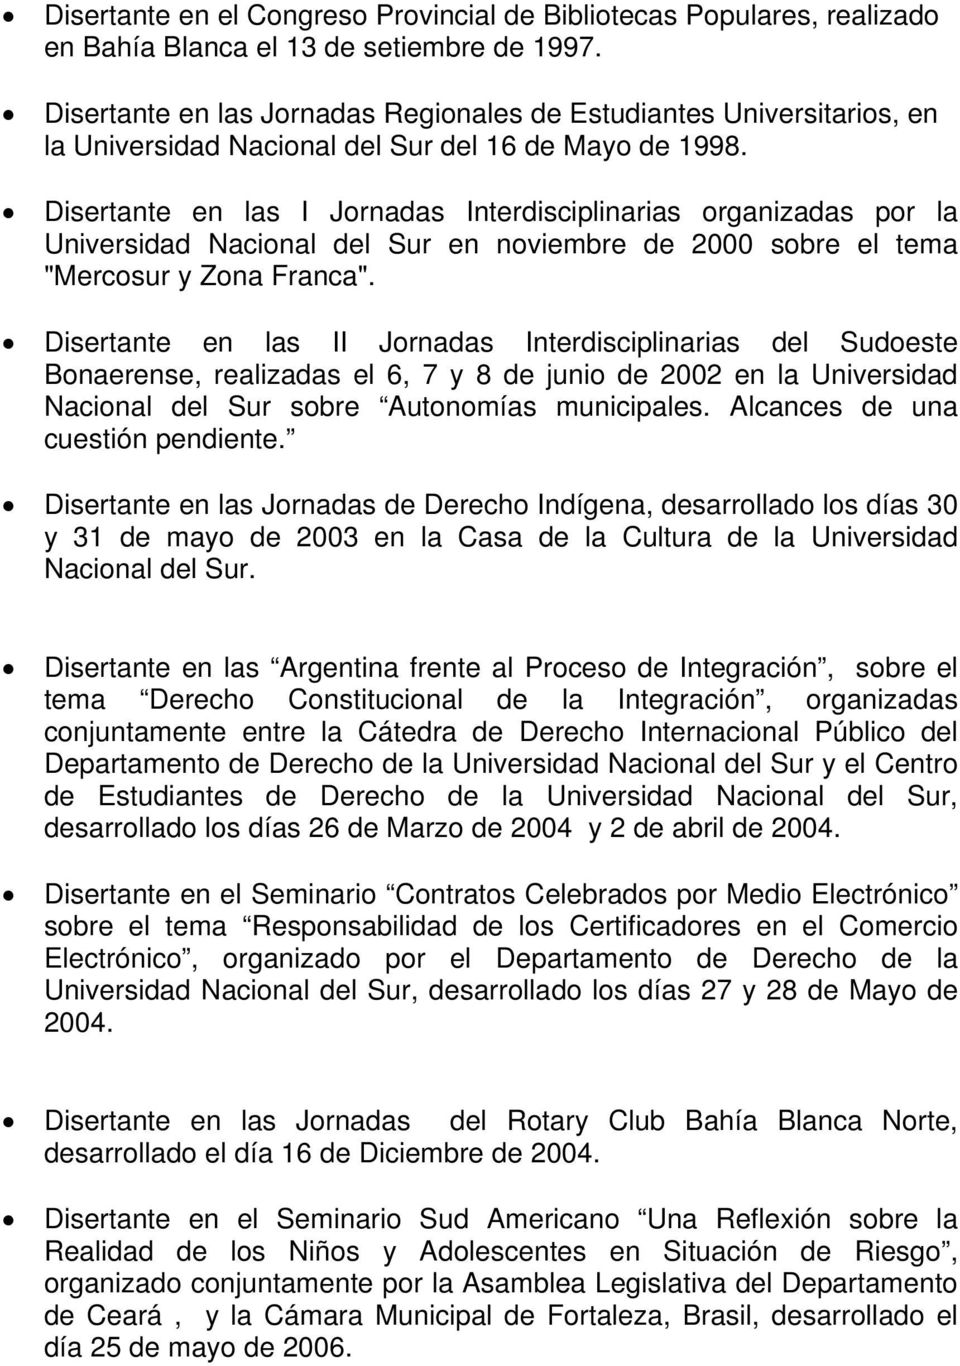 Disertante en las I Jornadas Interdisciplinarias organizadas por la Universidad Nacional del Sur en noviembre de 2000 sobre el tema "Mercosur y Zona Franca".